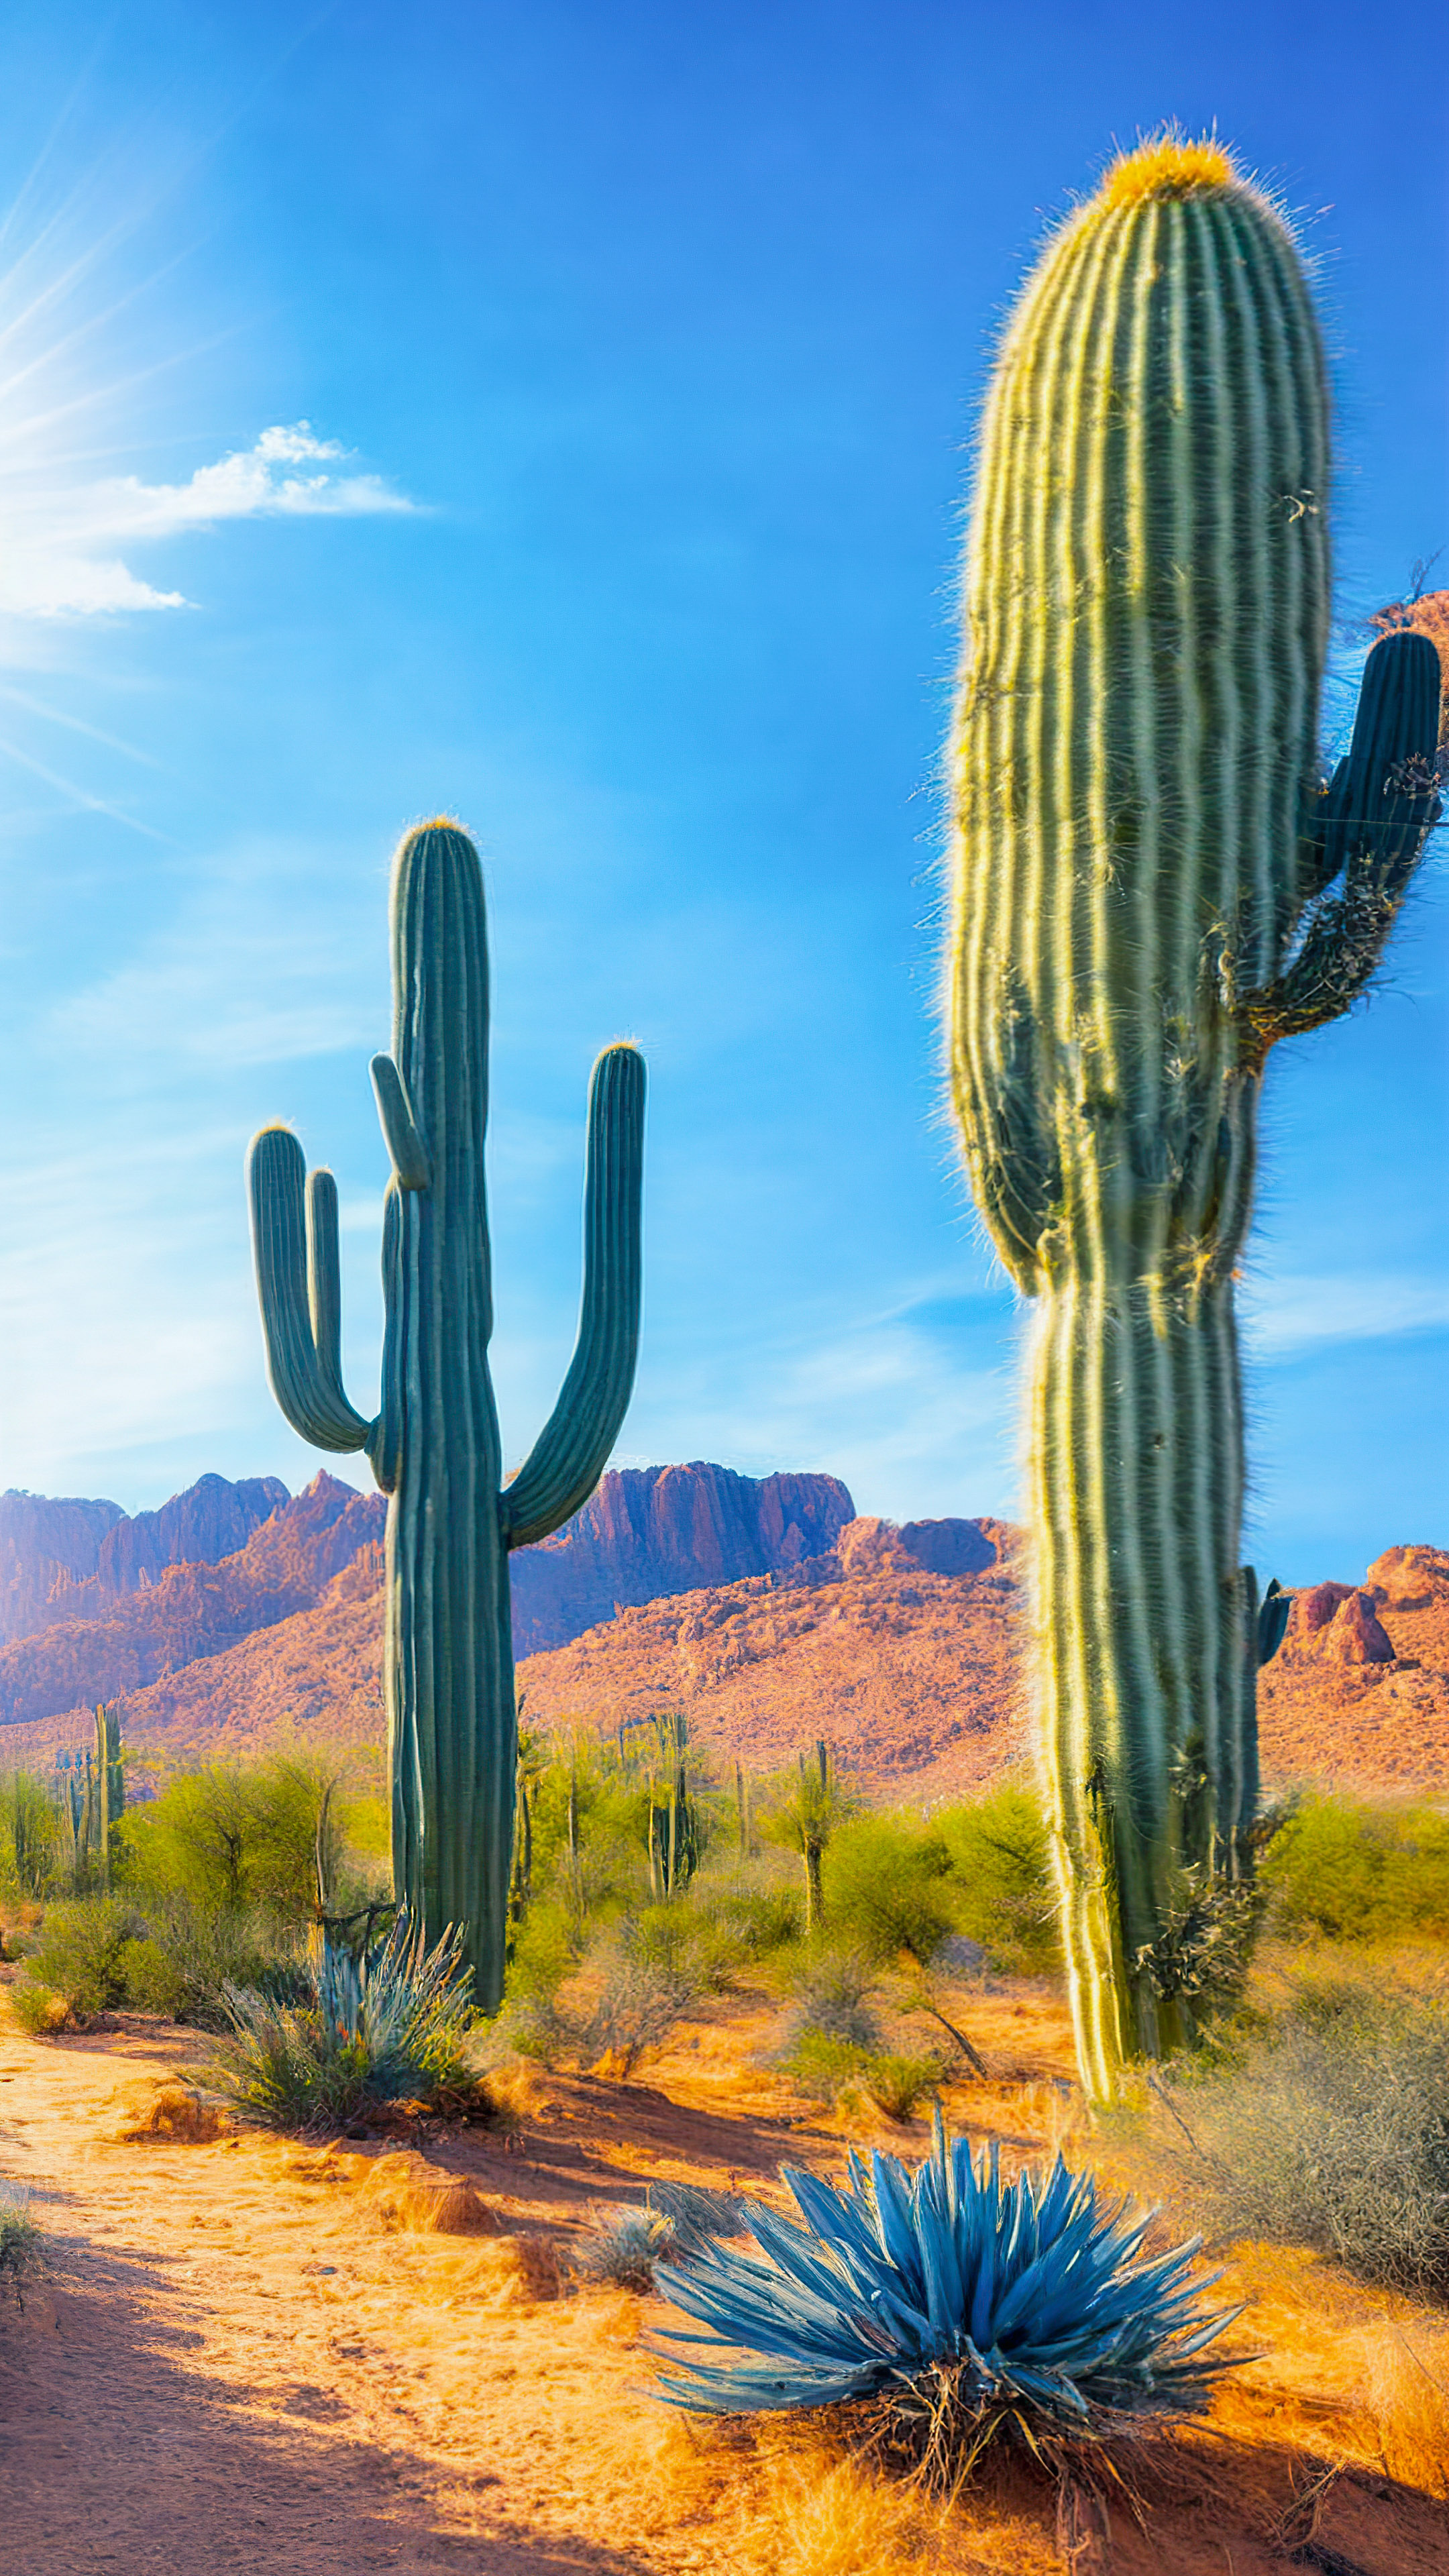 Savourez la splendeur de notre fond d'écran nature en 4K pour iPhone, illustrant un paysage désertique baigné de soleil avec des cactus saguaro imposants sous un ciel bleu infini.